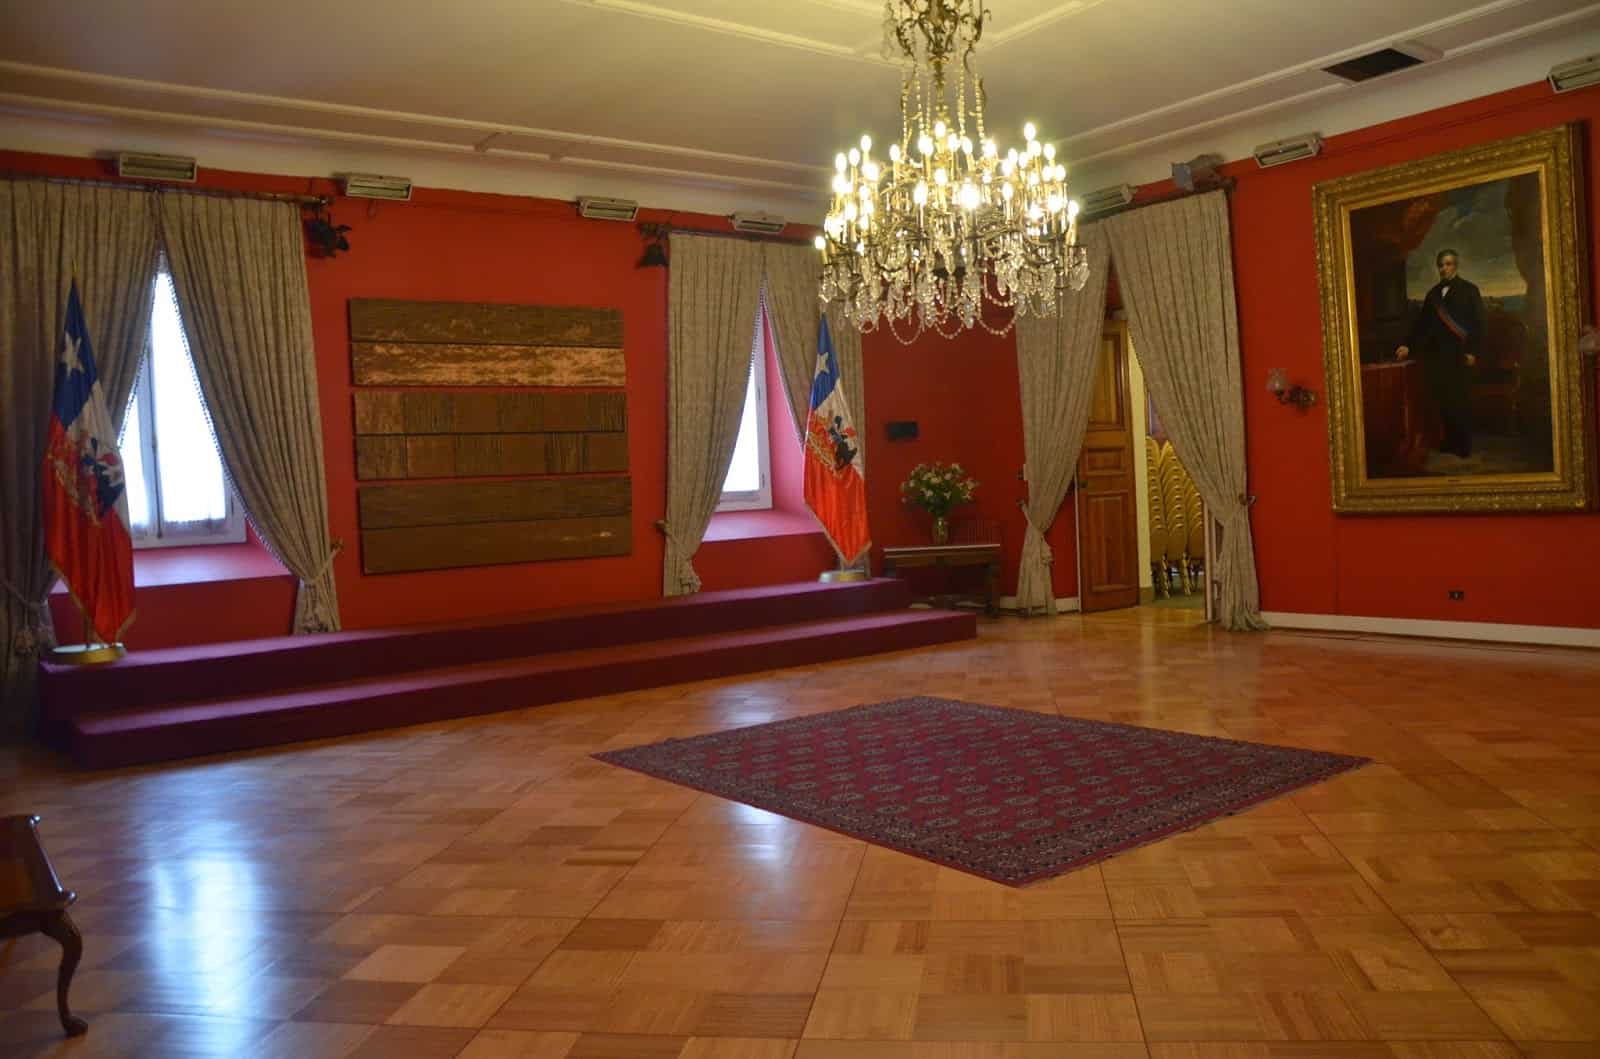 Salón Montt-Varas at Palacio de La Moneda in Santiago de Chile